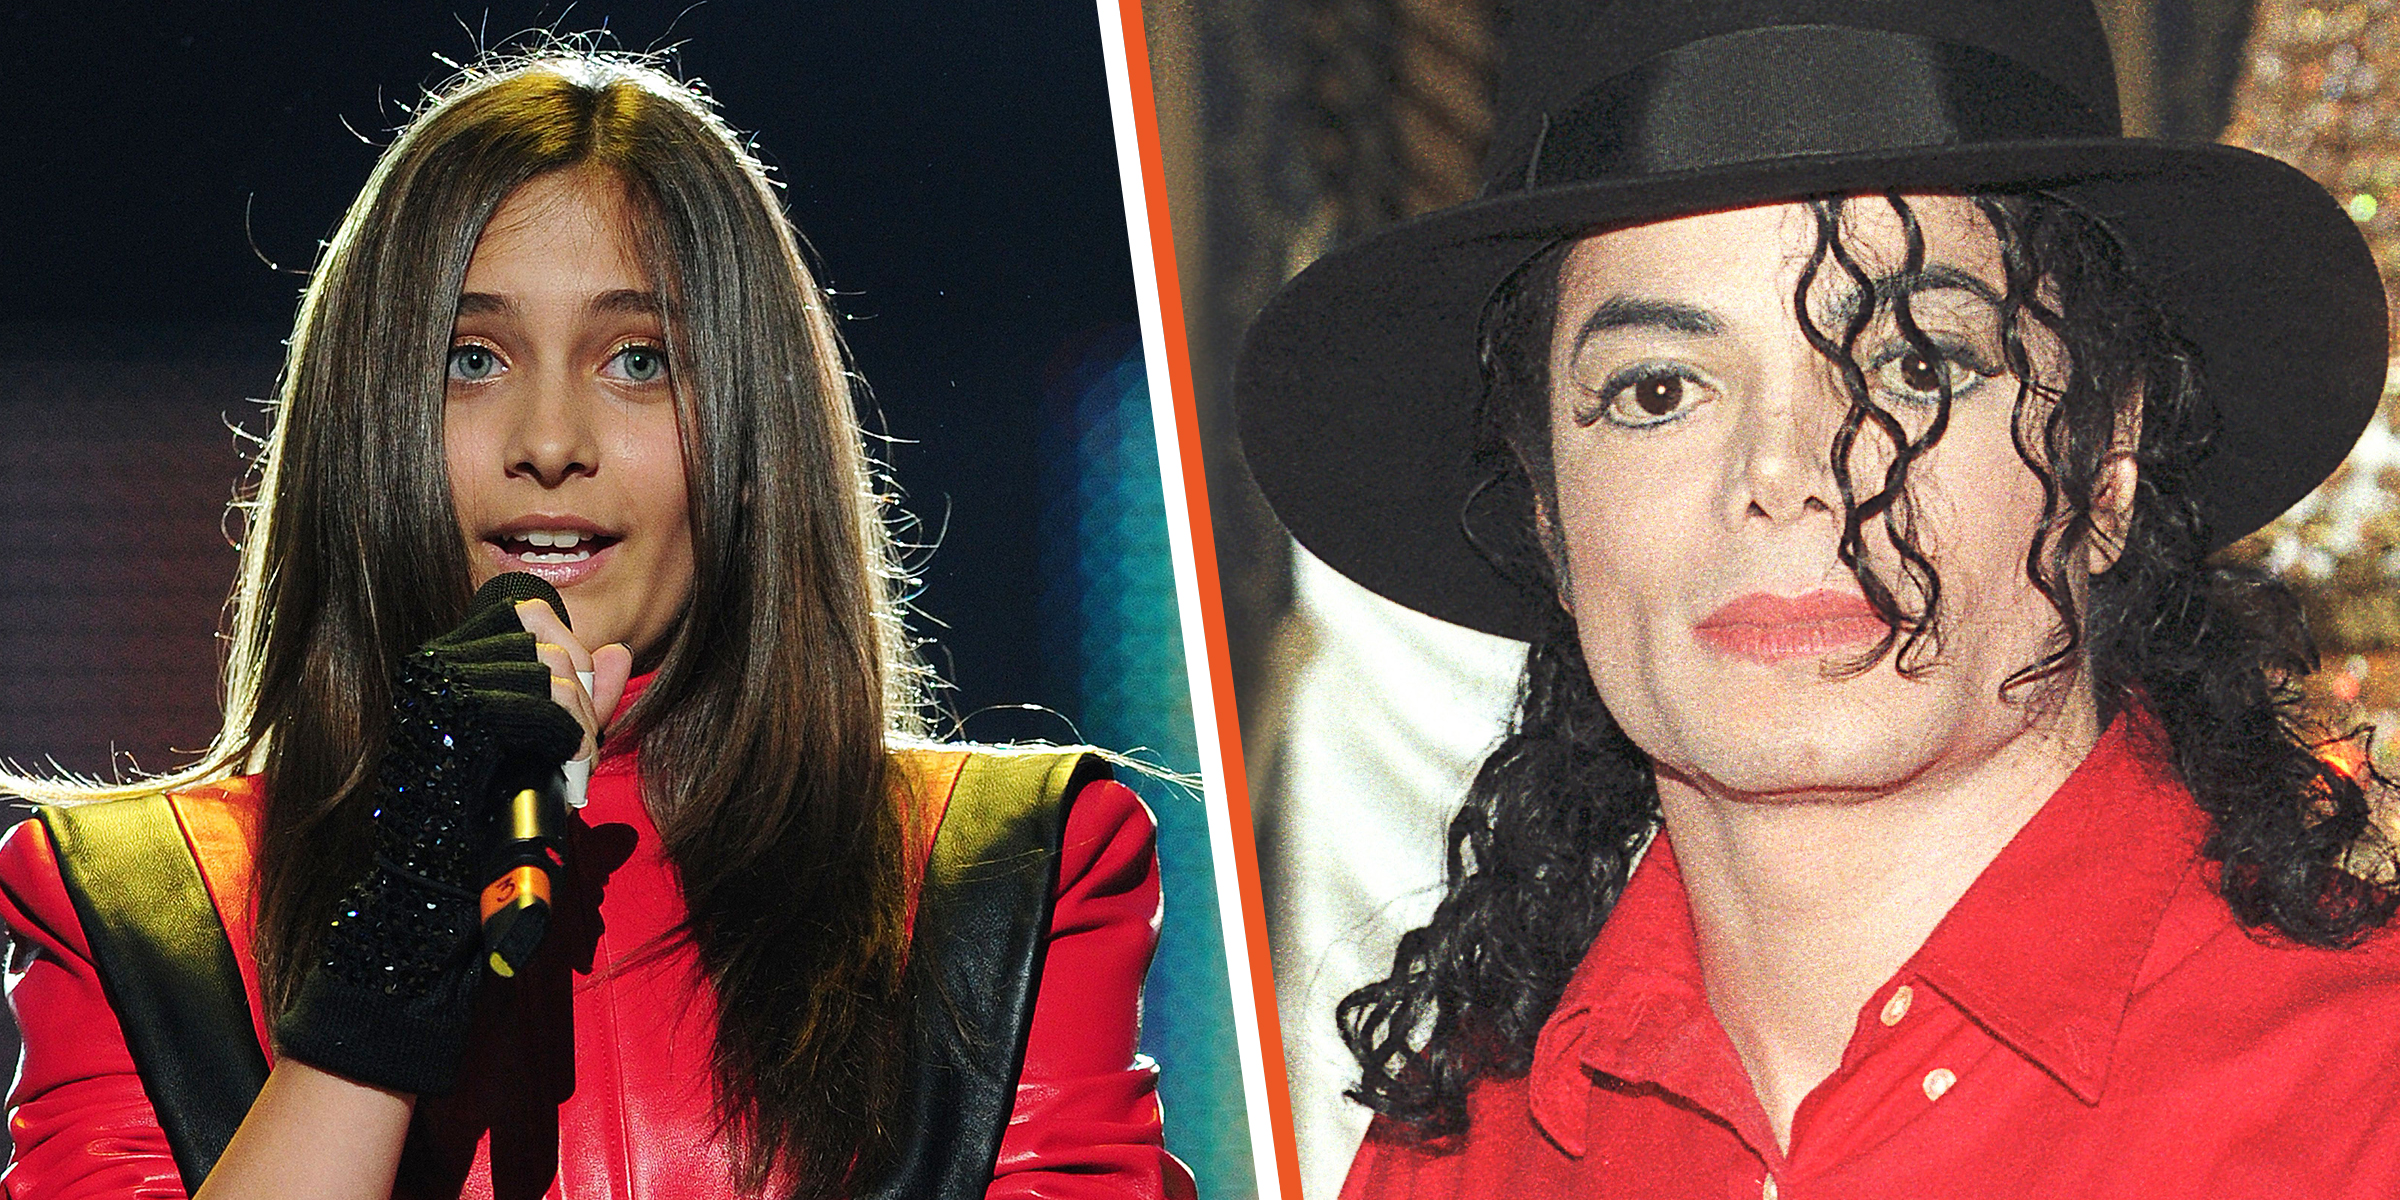 Paris Jackson and Michael Jackson. | Source: Getty Images